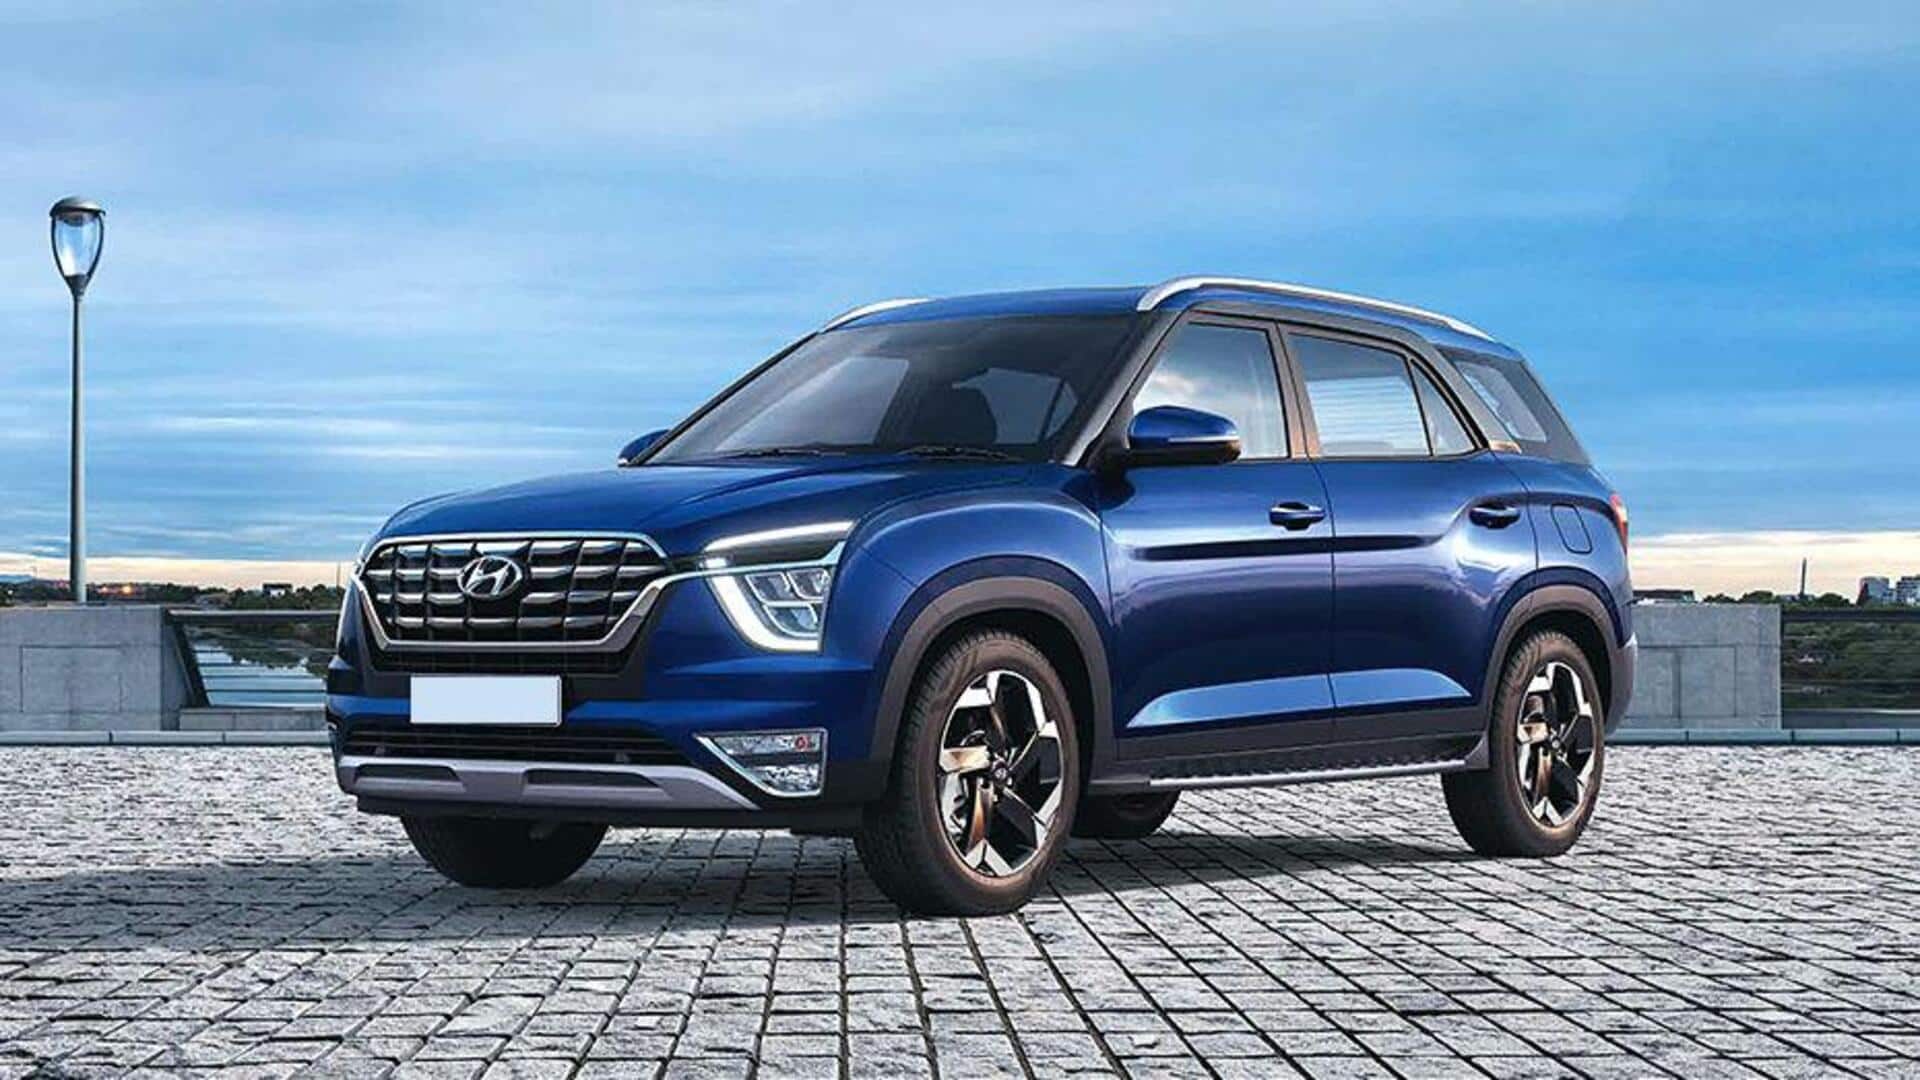 Hyundai prepares to unveil 3 new SUVs in India